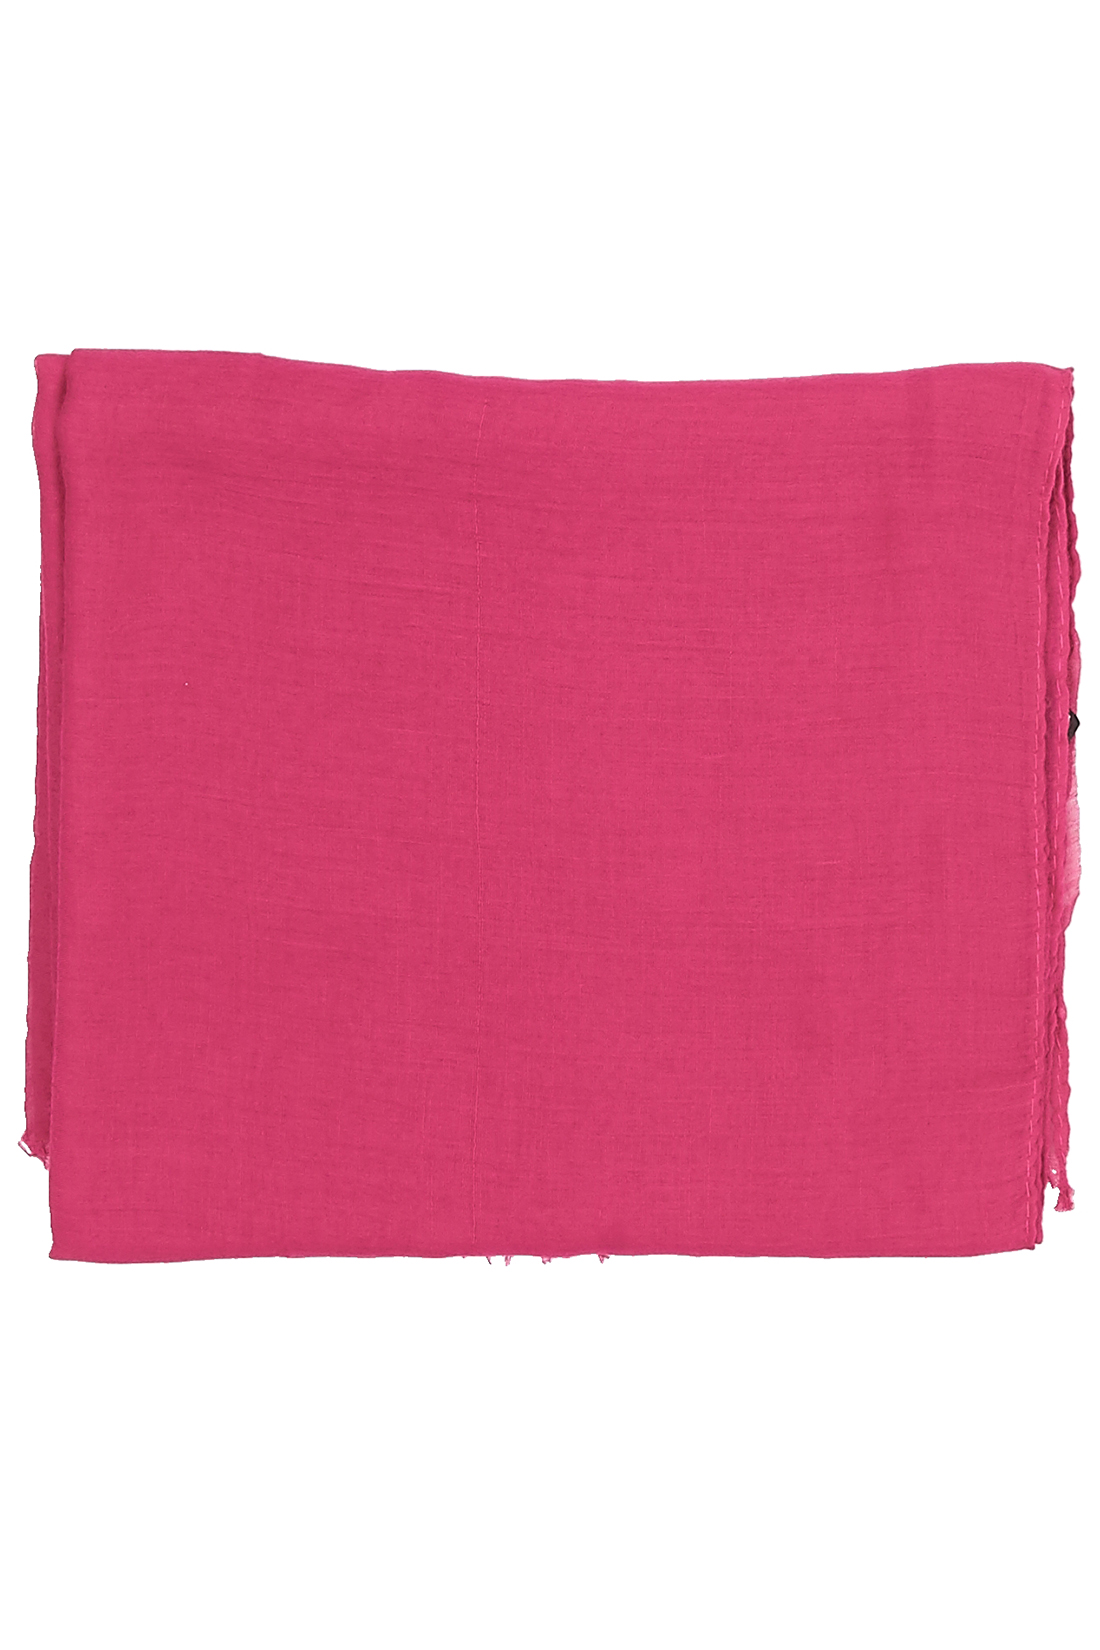 Шарф розового цвета (арт. baon B358039), размер Без/раз Шарф розового цвета (арт. baon B358039) - фото 2